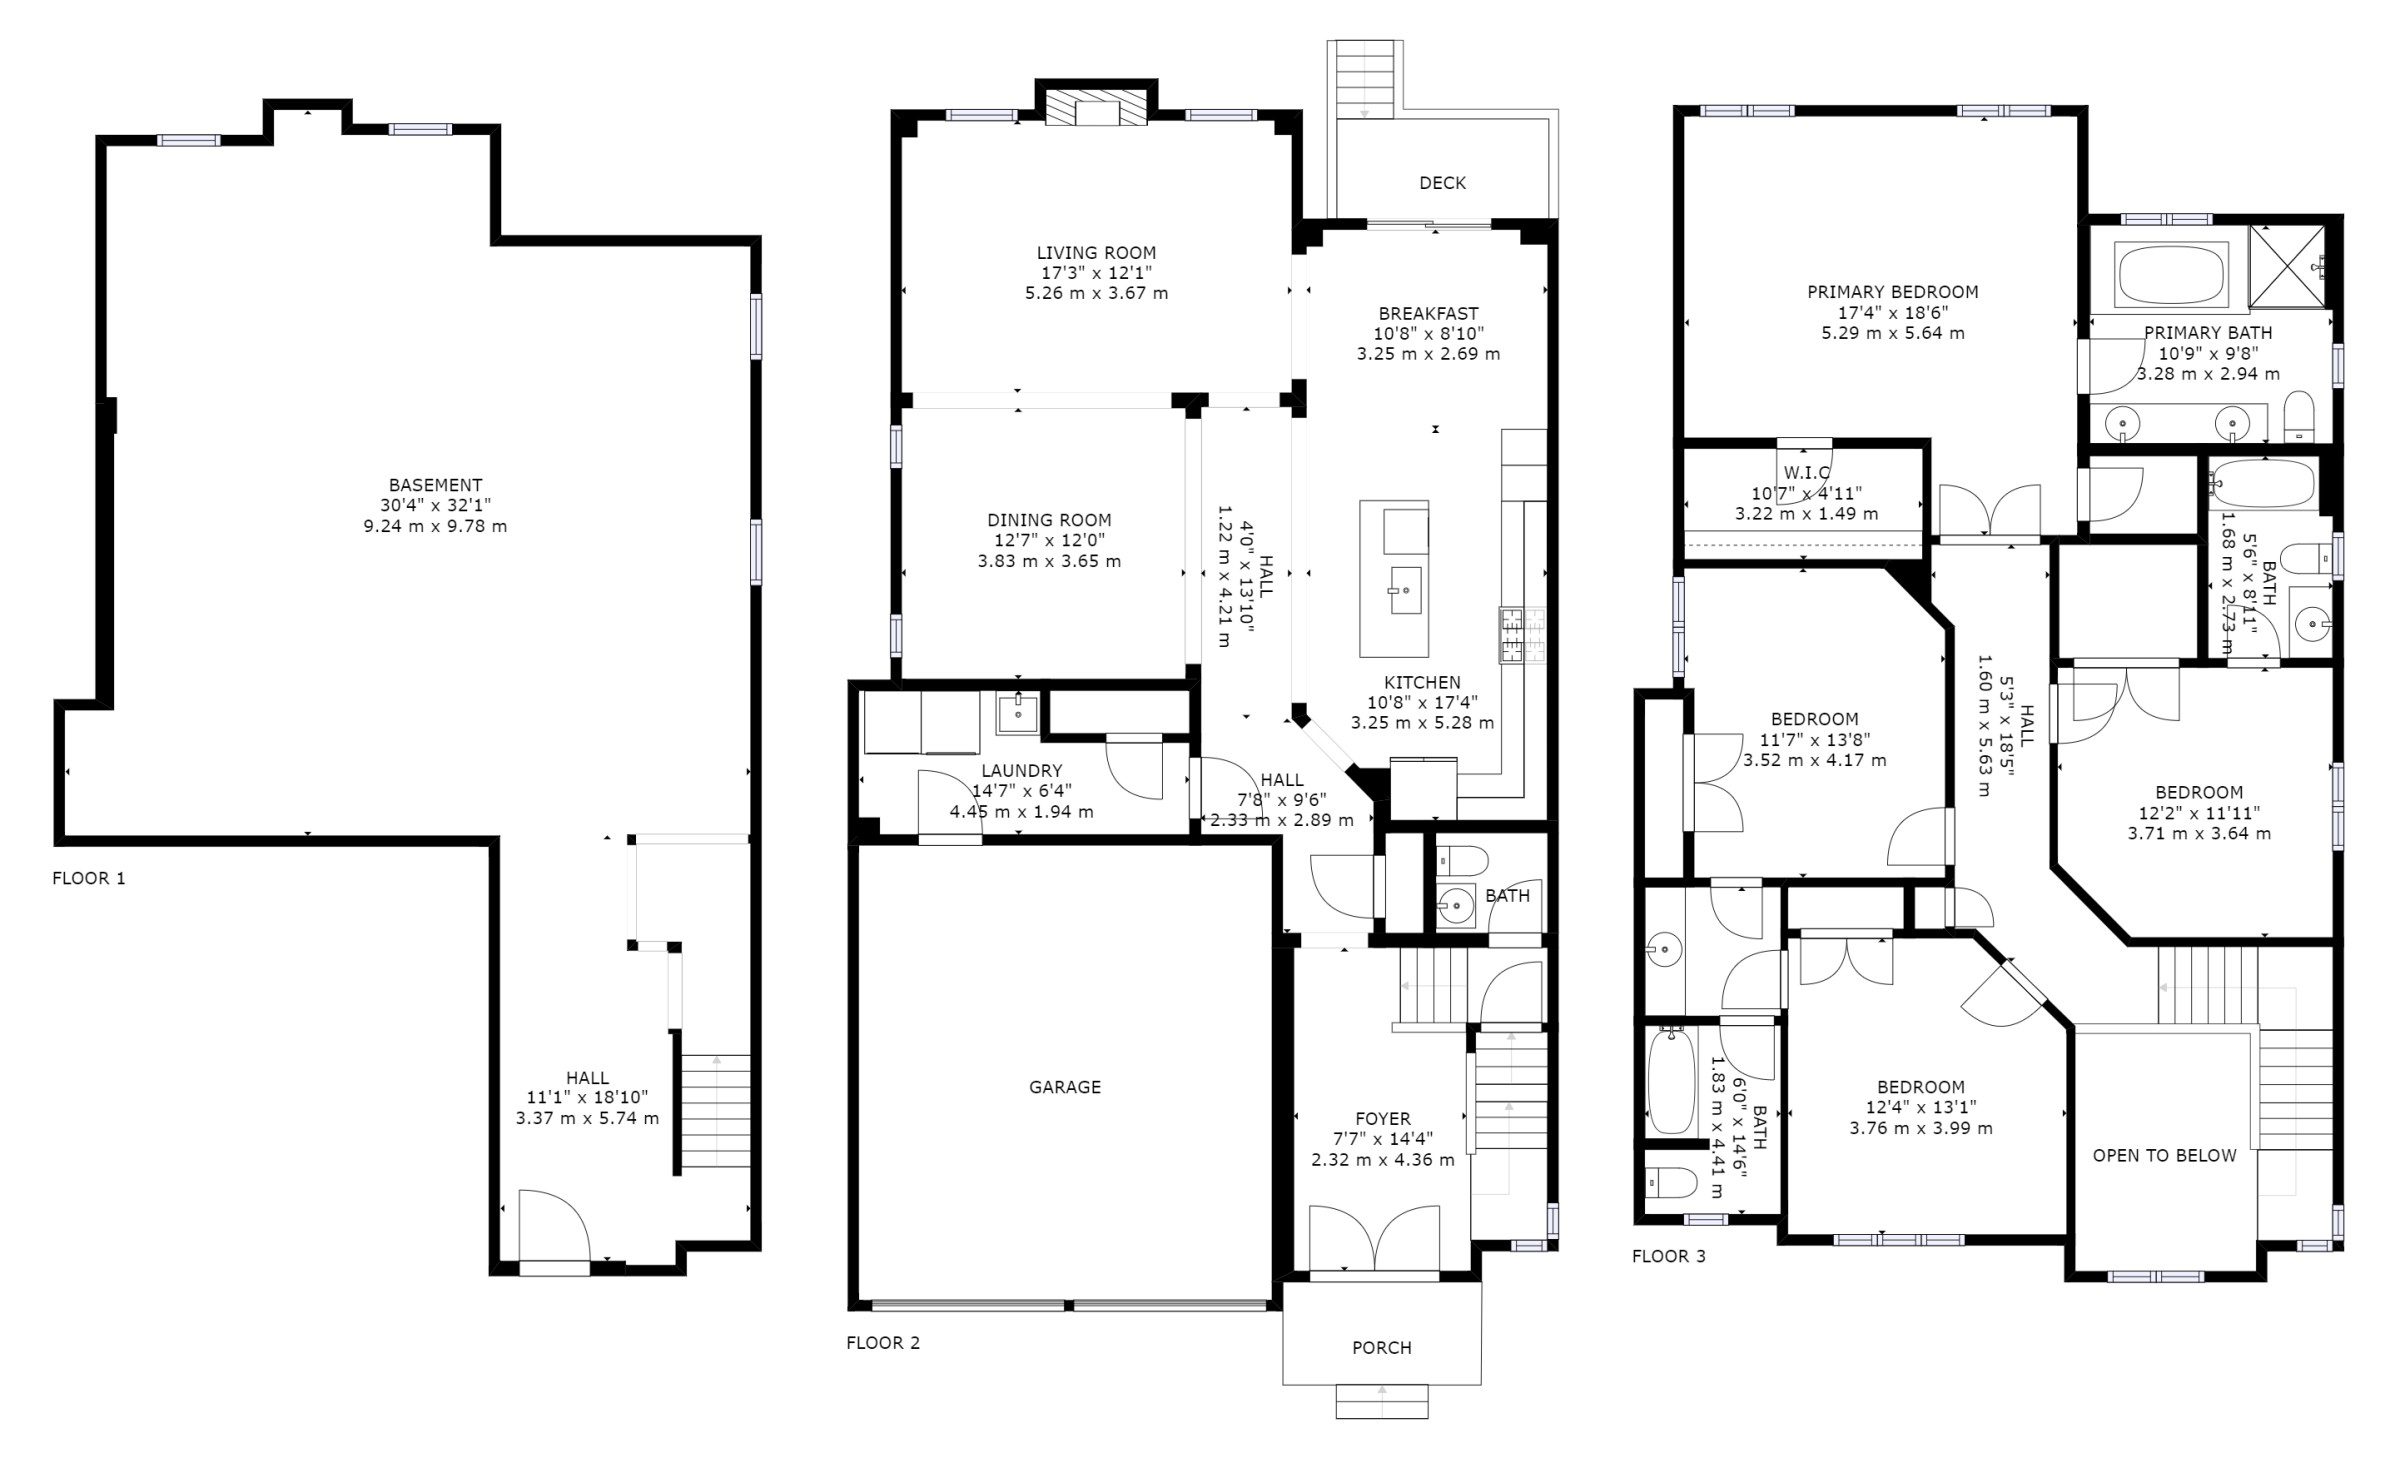 564 Mactier Drive - Floor Plans